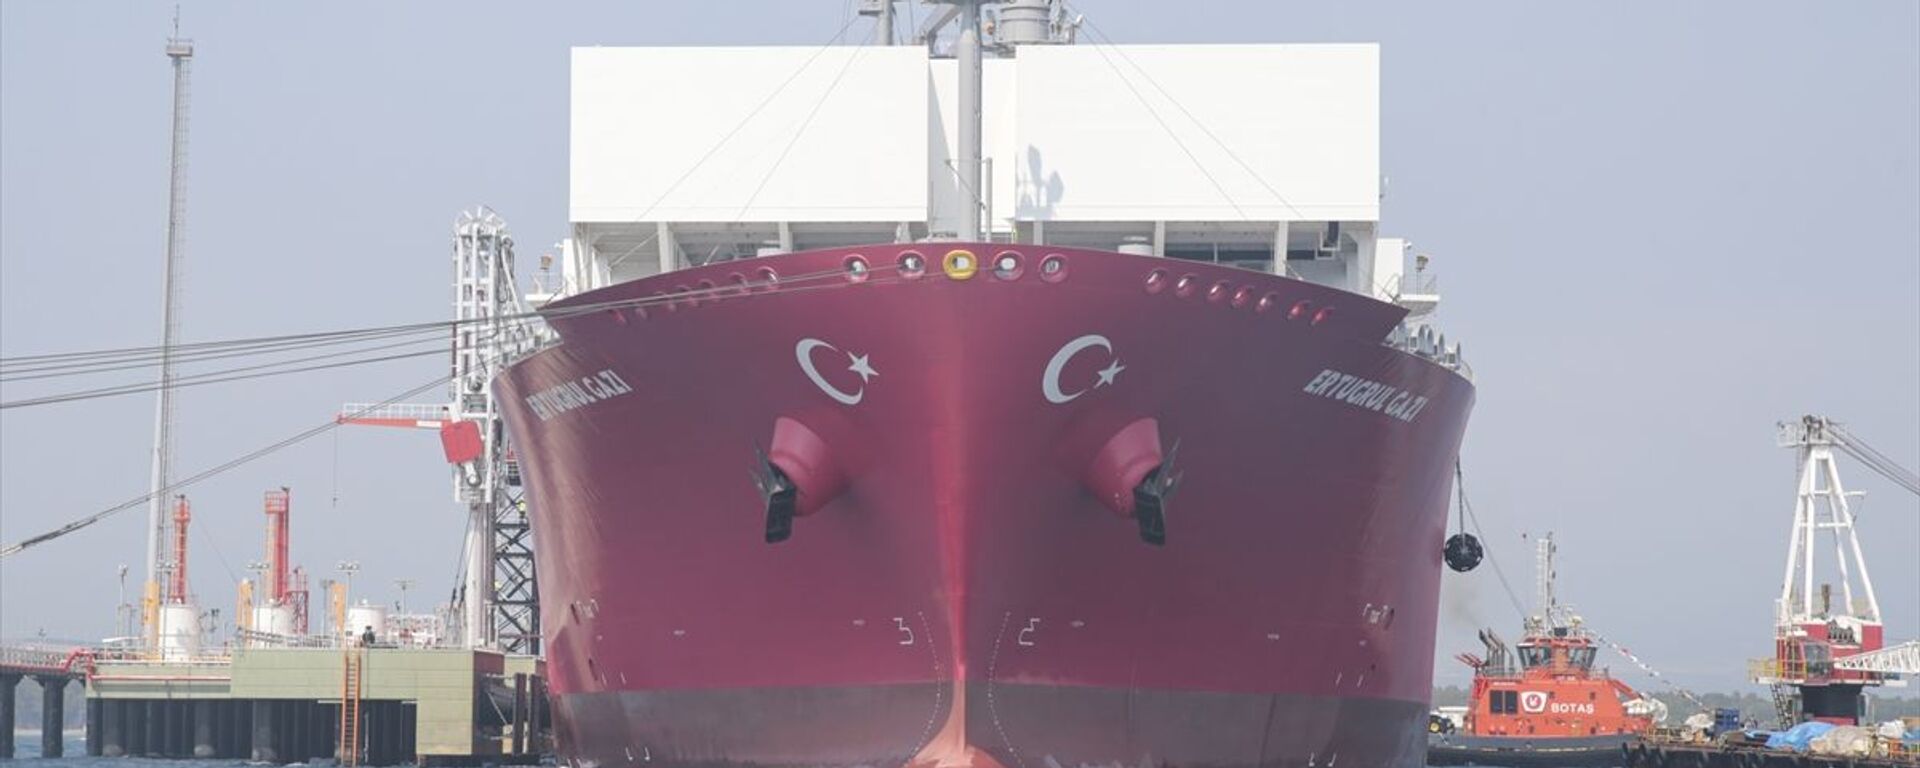 Türkiye'nin ilk doğalgaz depolama gemisi Ertuğrul Gazi - Sputnik Türkiye, 1920, 25.06.2021